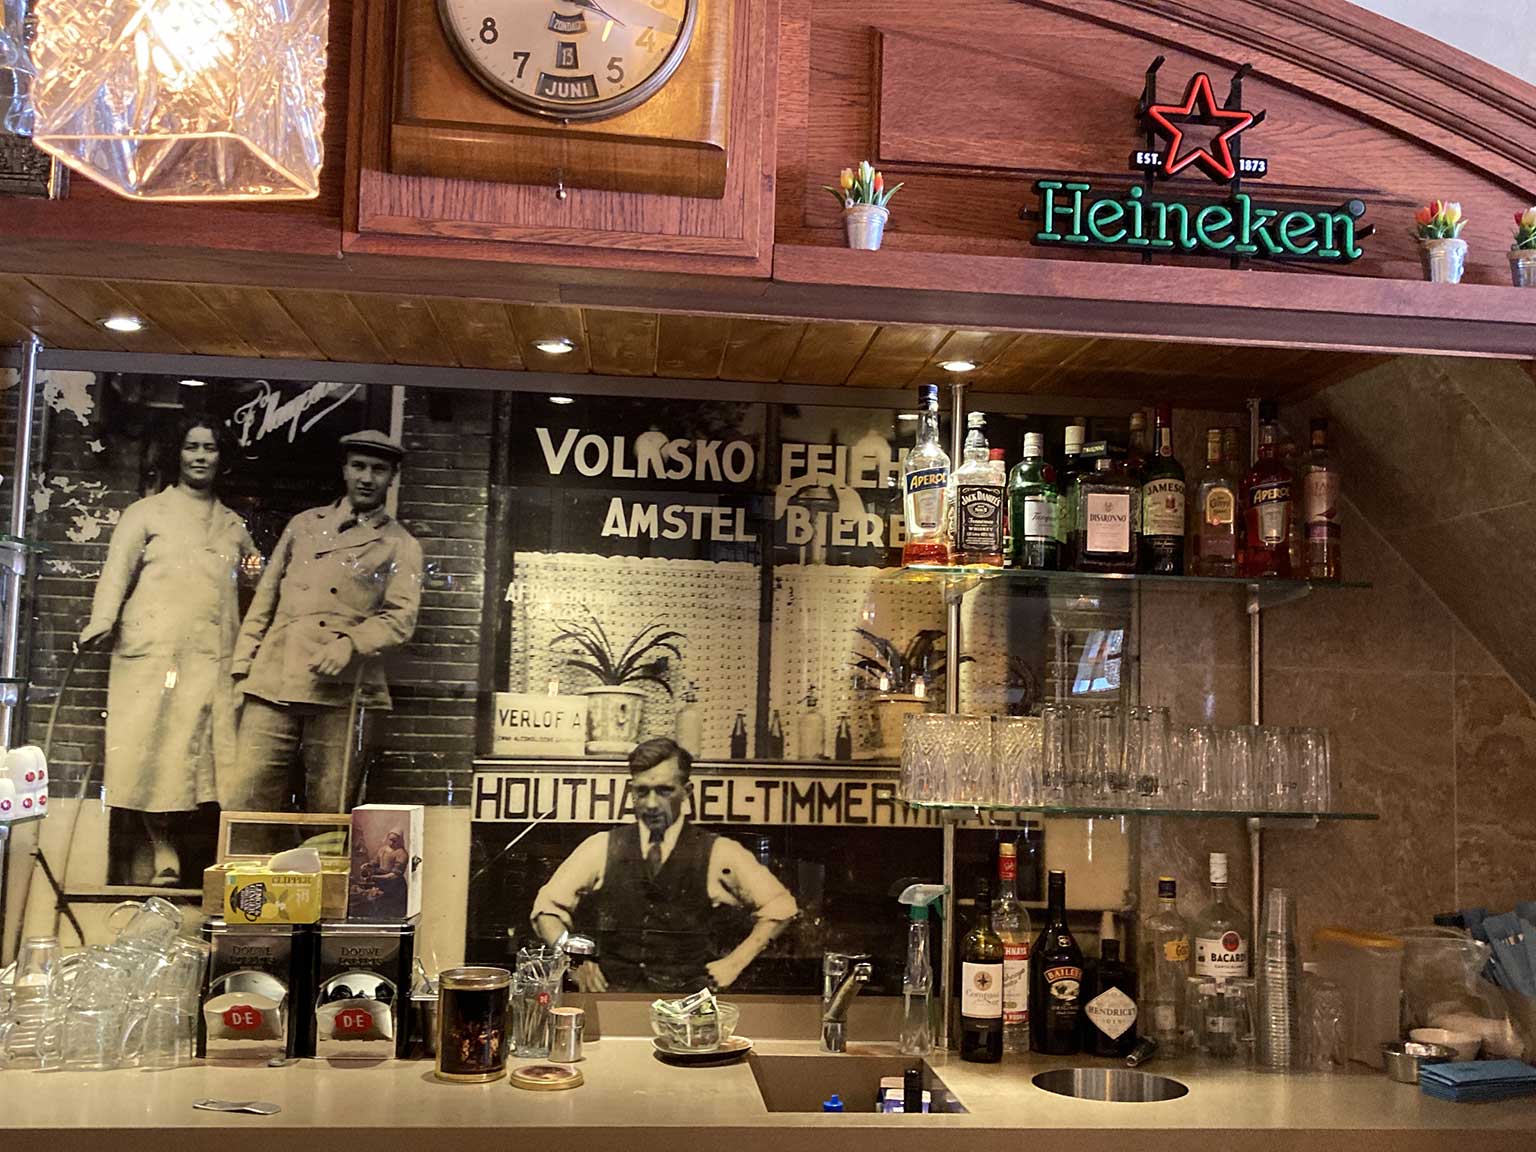 Lunchcafé De Spiegel, Amsterdam, met een oude foto van toen het een Volkskoffiehuis was